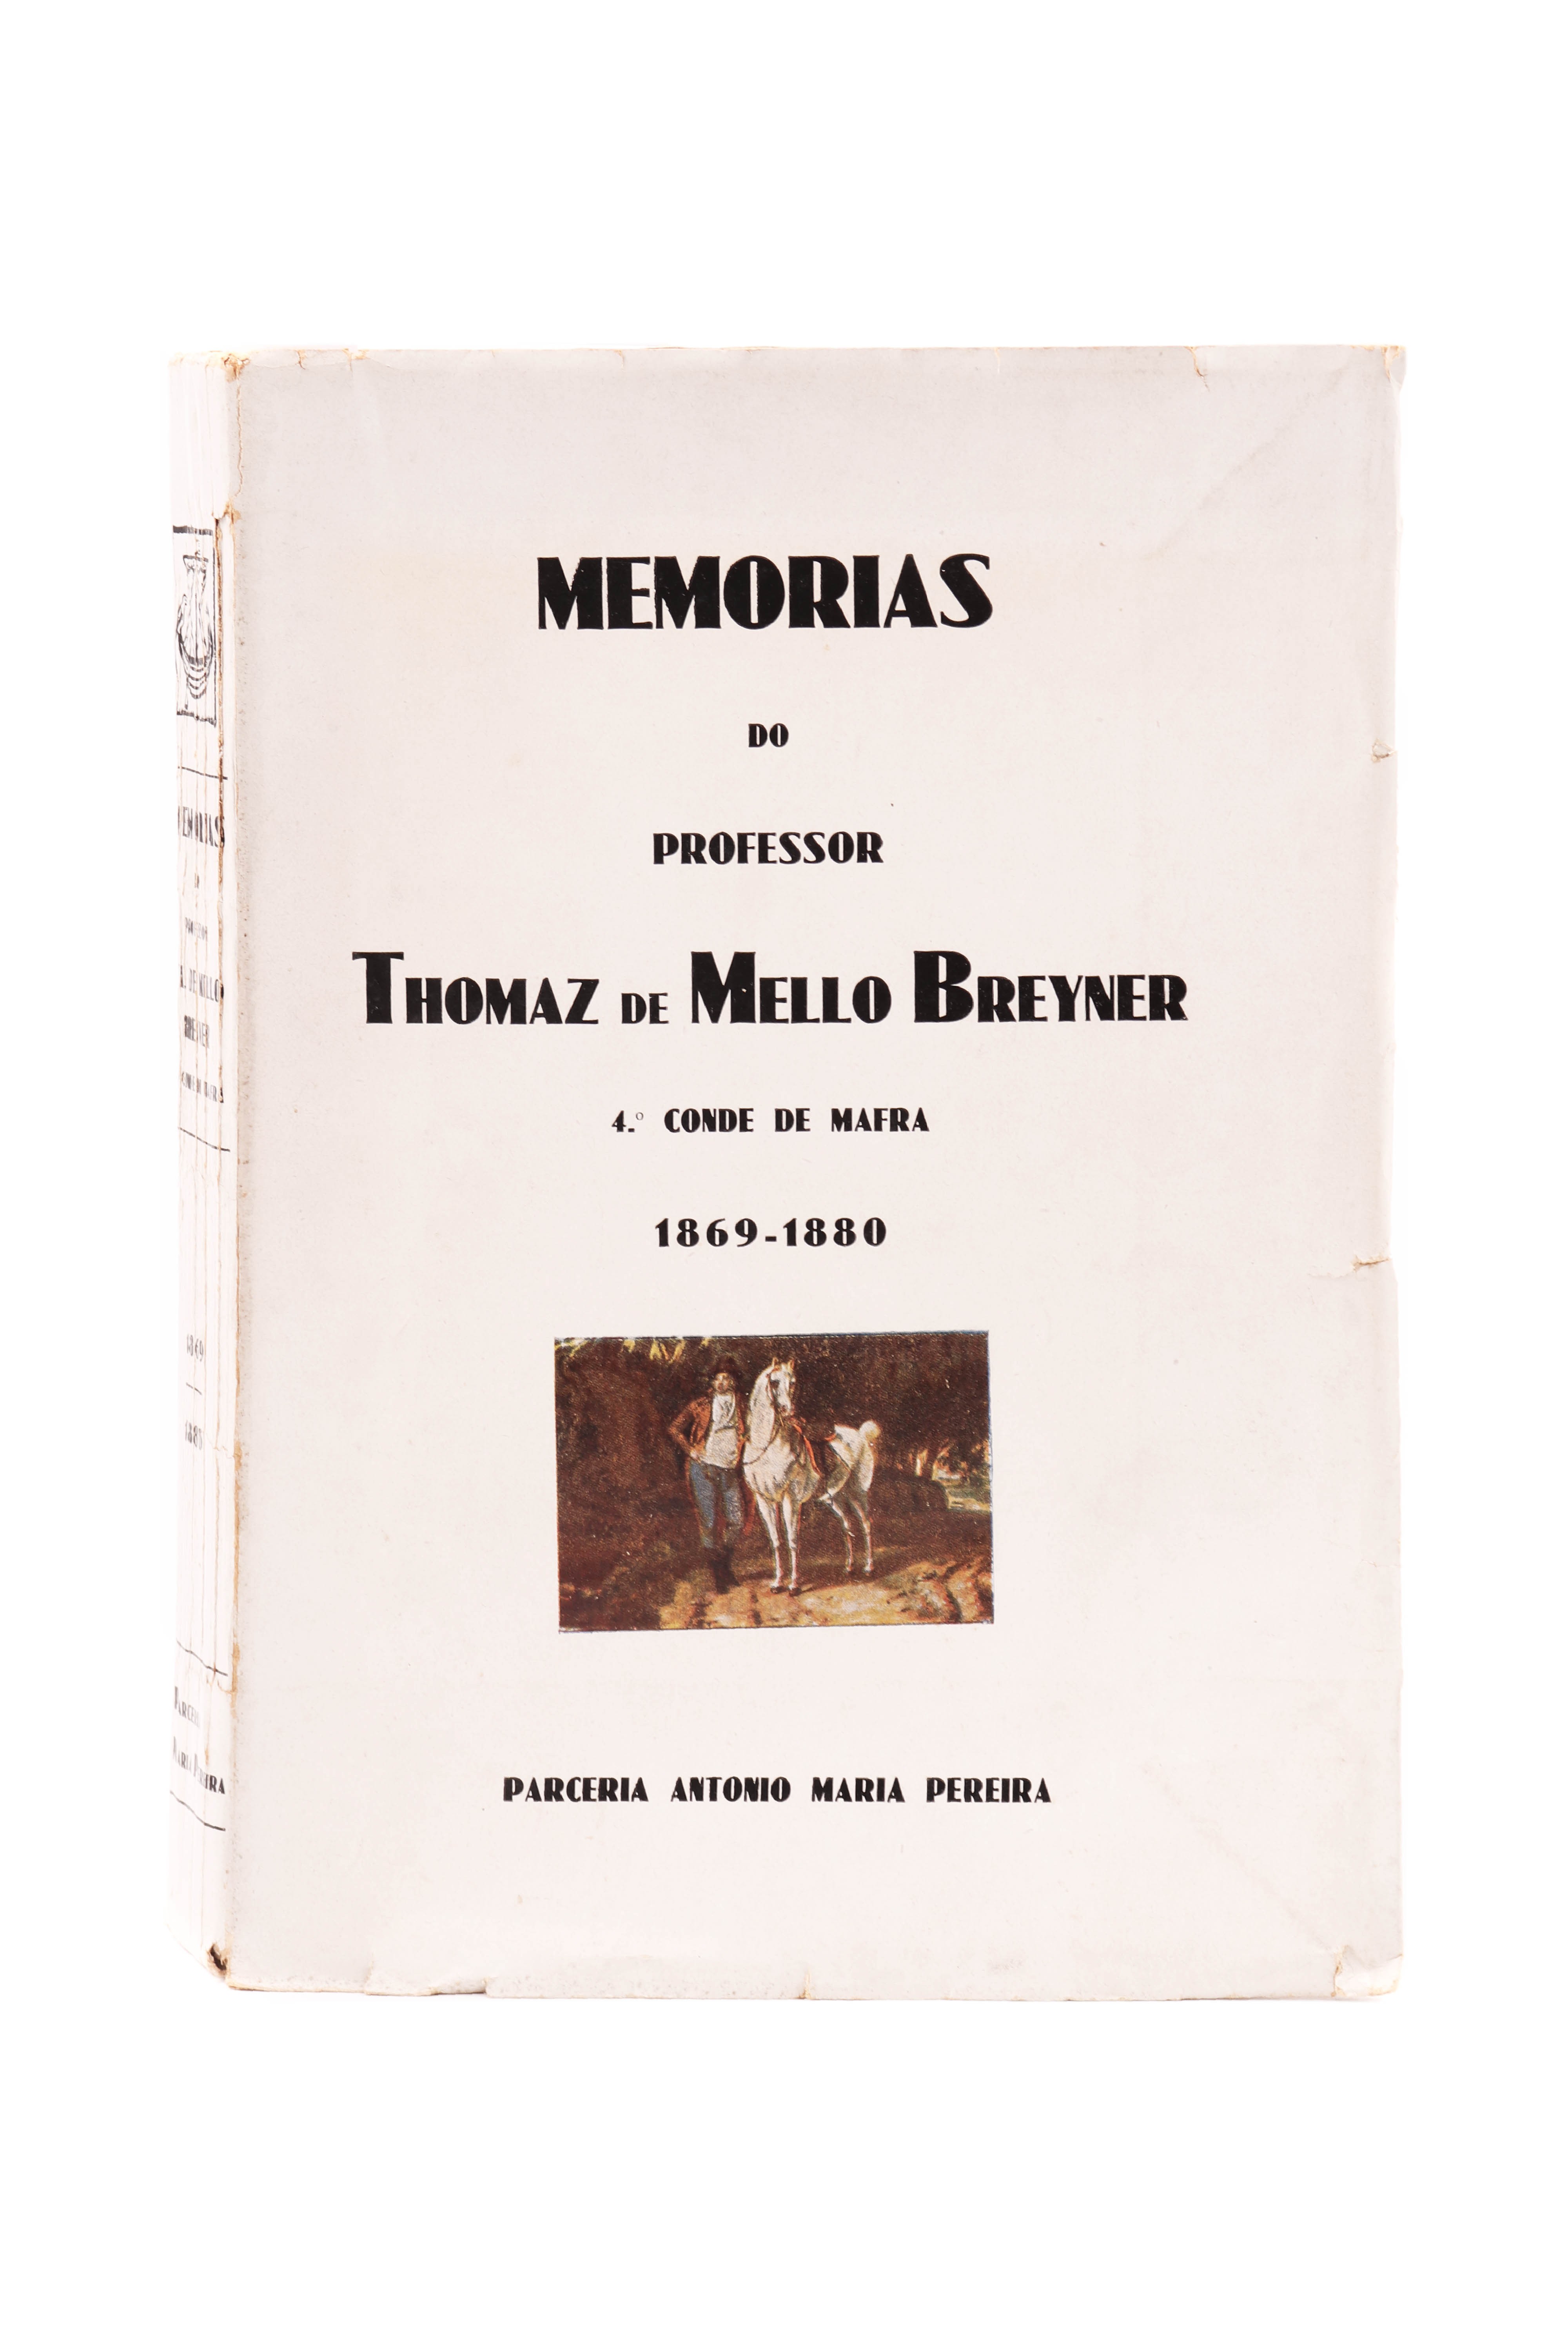 MEMÓRIAS DO PROFESSOR TOMÁZ DE MELLO BREYNER, 4º Conde de Mafra (1869 - 1880)